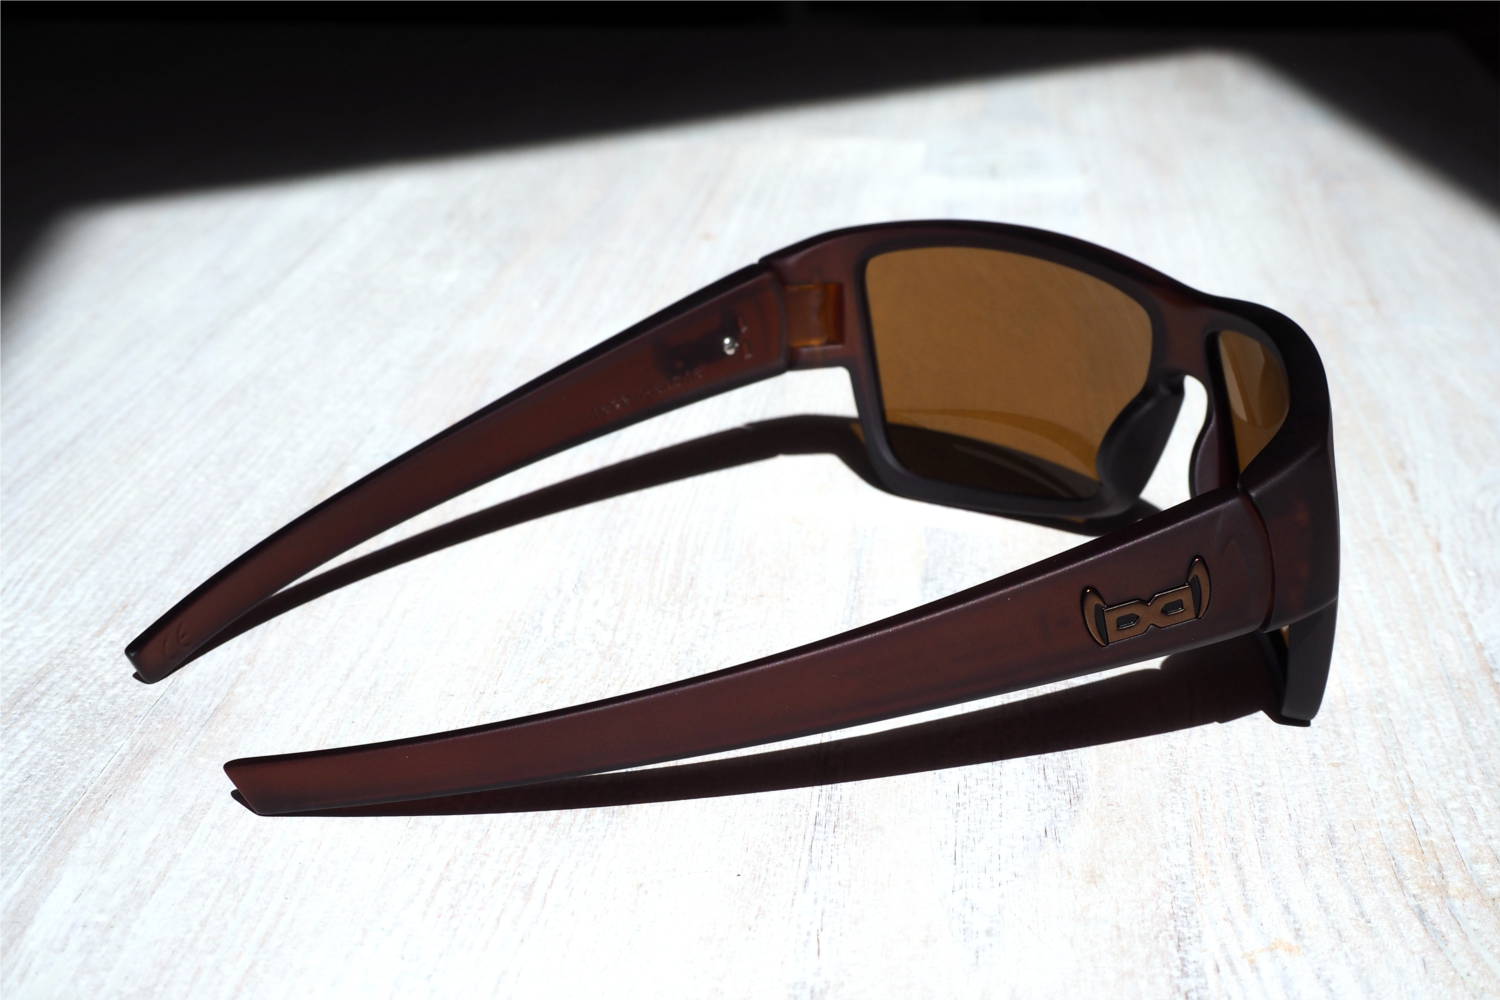 Sonnenbrille zum Laufen - Test der gloryfy G14 Sportbrille mit Style